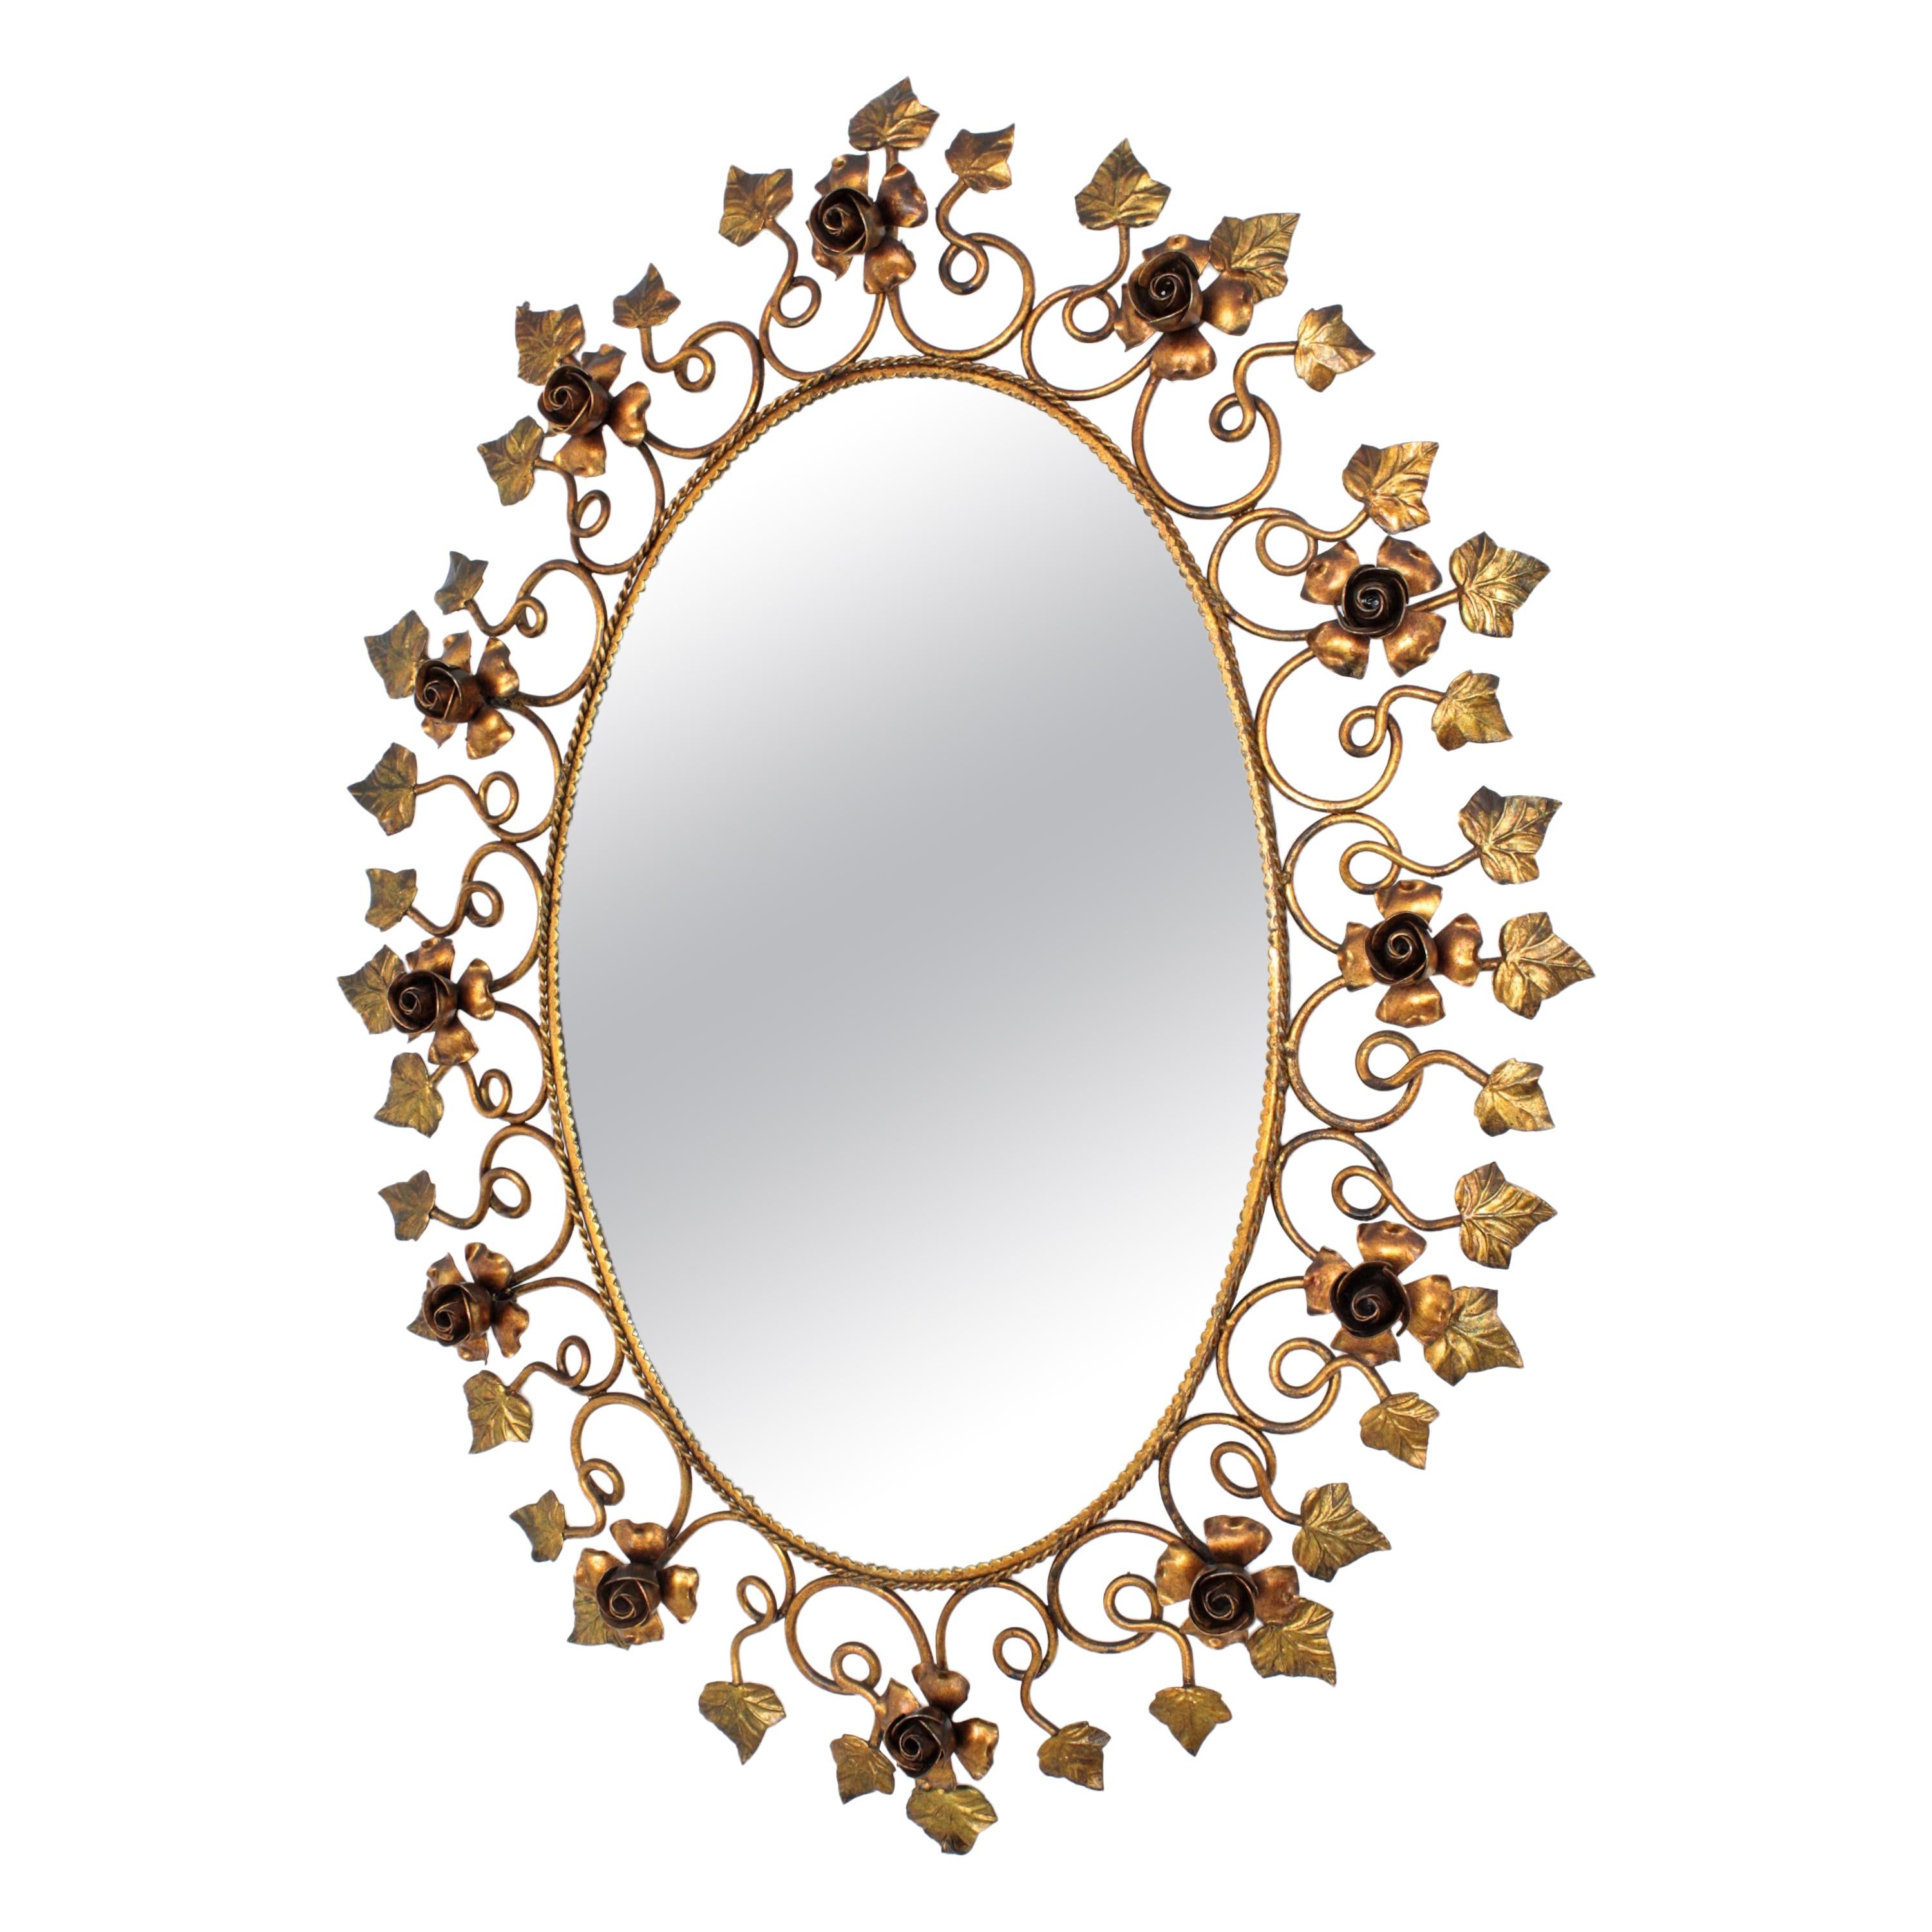 Ovaler Spiegel aus vergoldetem Eisen im Hollywood-Regency-Stil, umrahmt von einem Dekor aus Rosen und Blättern, Spanien, 1950er Jahre.
Dieser Spiegel ist in feiner Handarbeit gefertigt und sein detaillierter Rahmen ist sehr dekorativ.
Ot ist eine